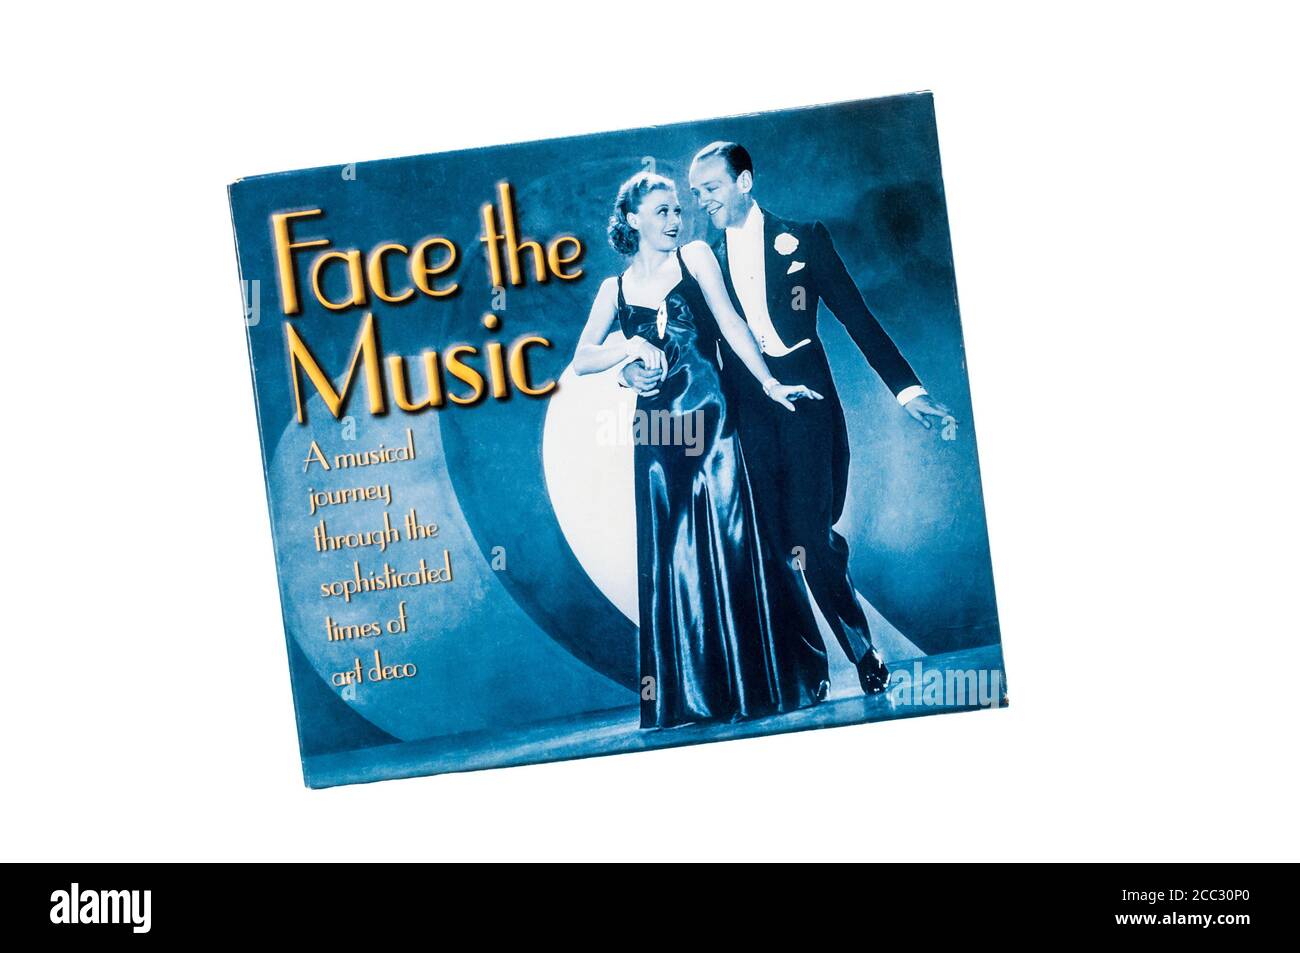 Face the Music fue lanzado en 2003 como una compilación de 2 CD remasterizada digitalmente por varios artistas incluyendo Fred Astaire & Ginger Rogers. Foto de stock